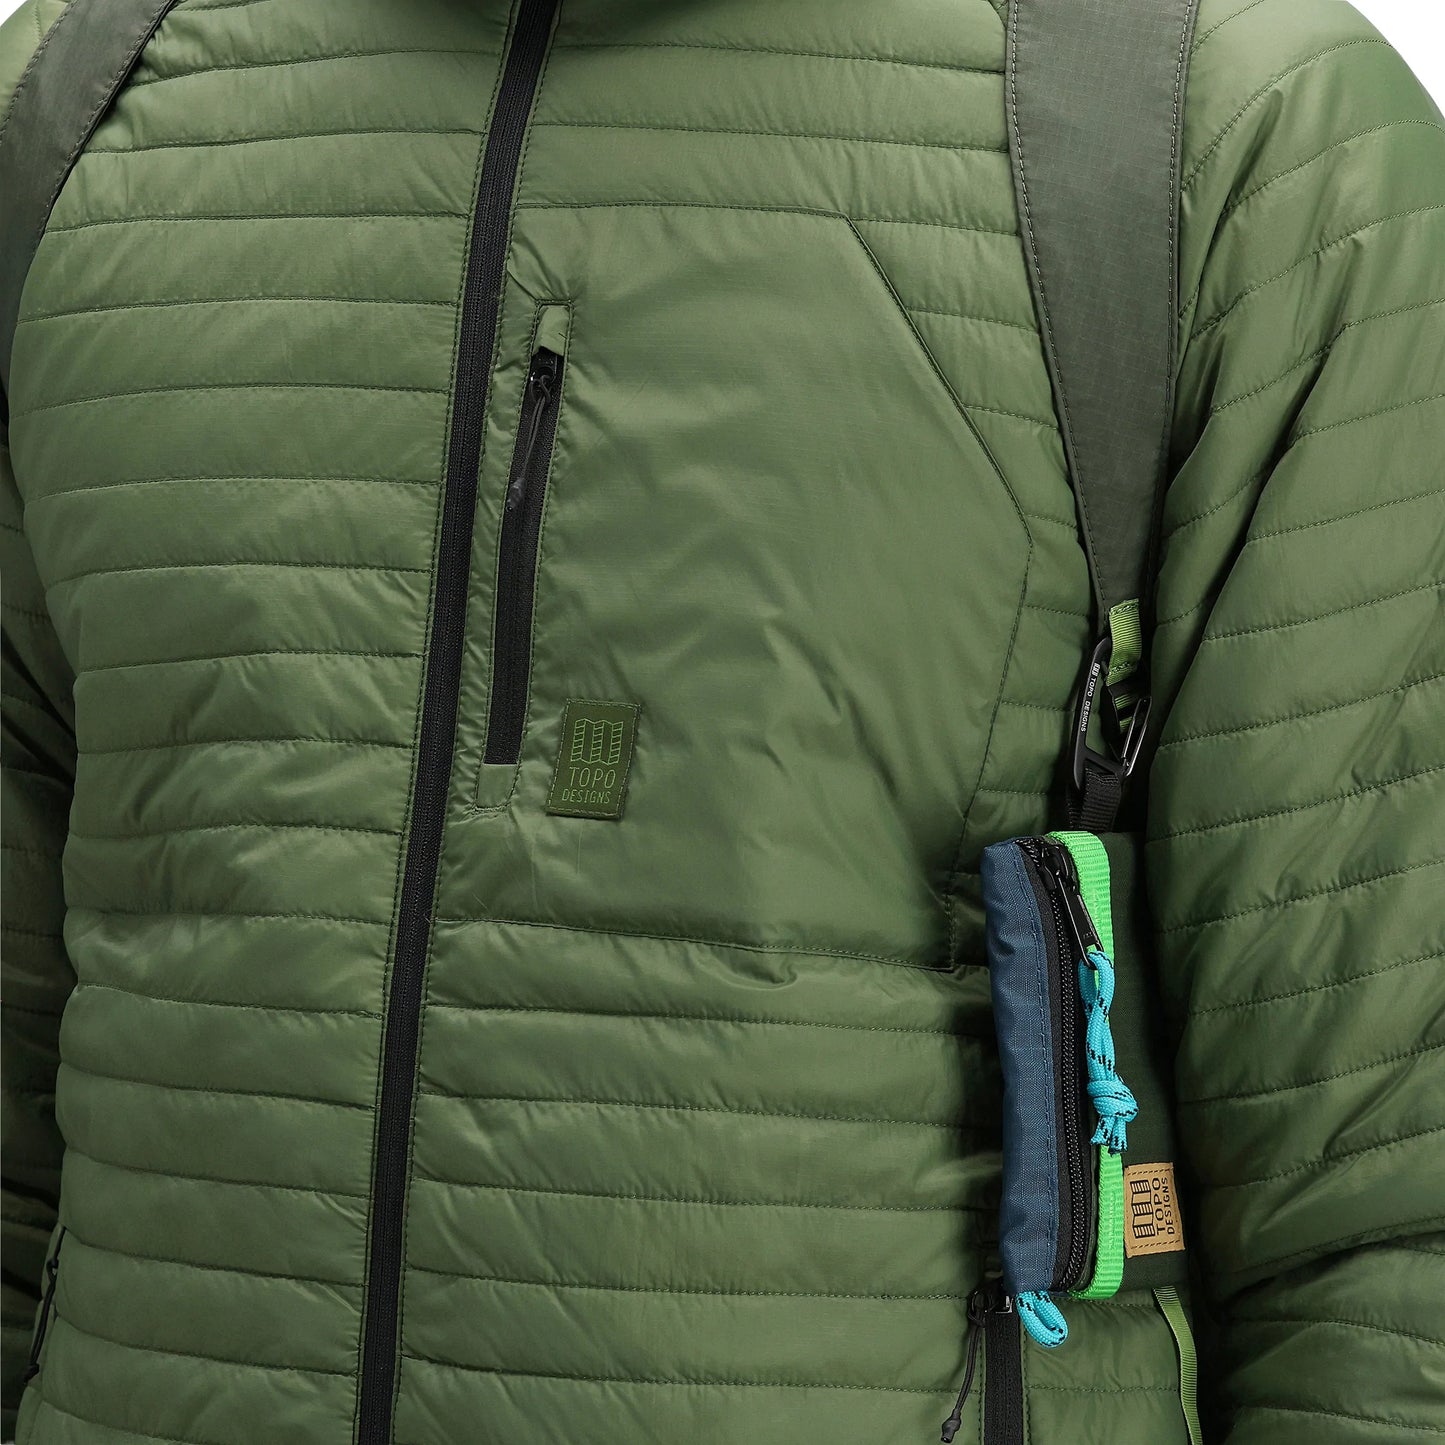 Pochette Accessory Bag Mountain - Topo Designs